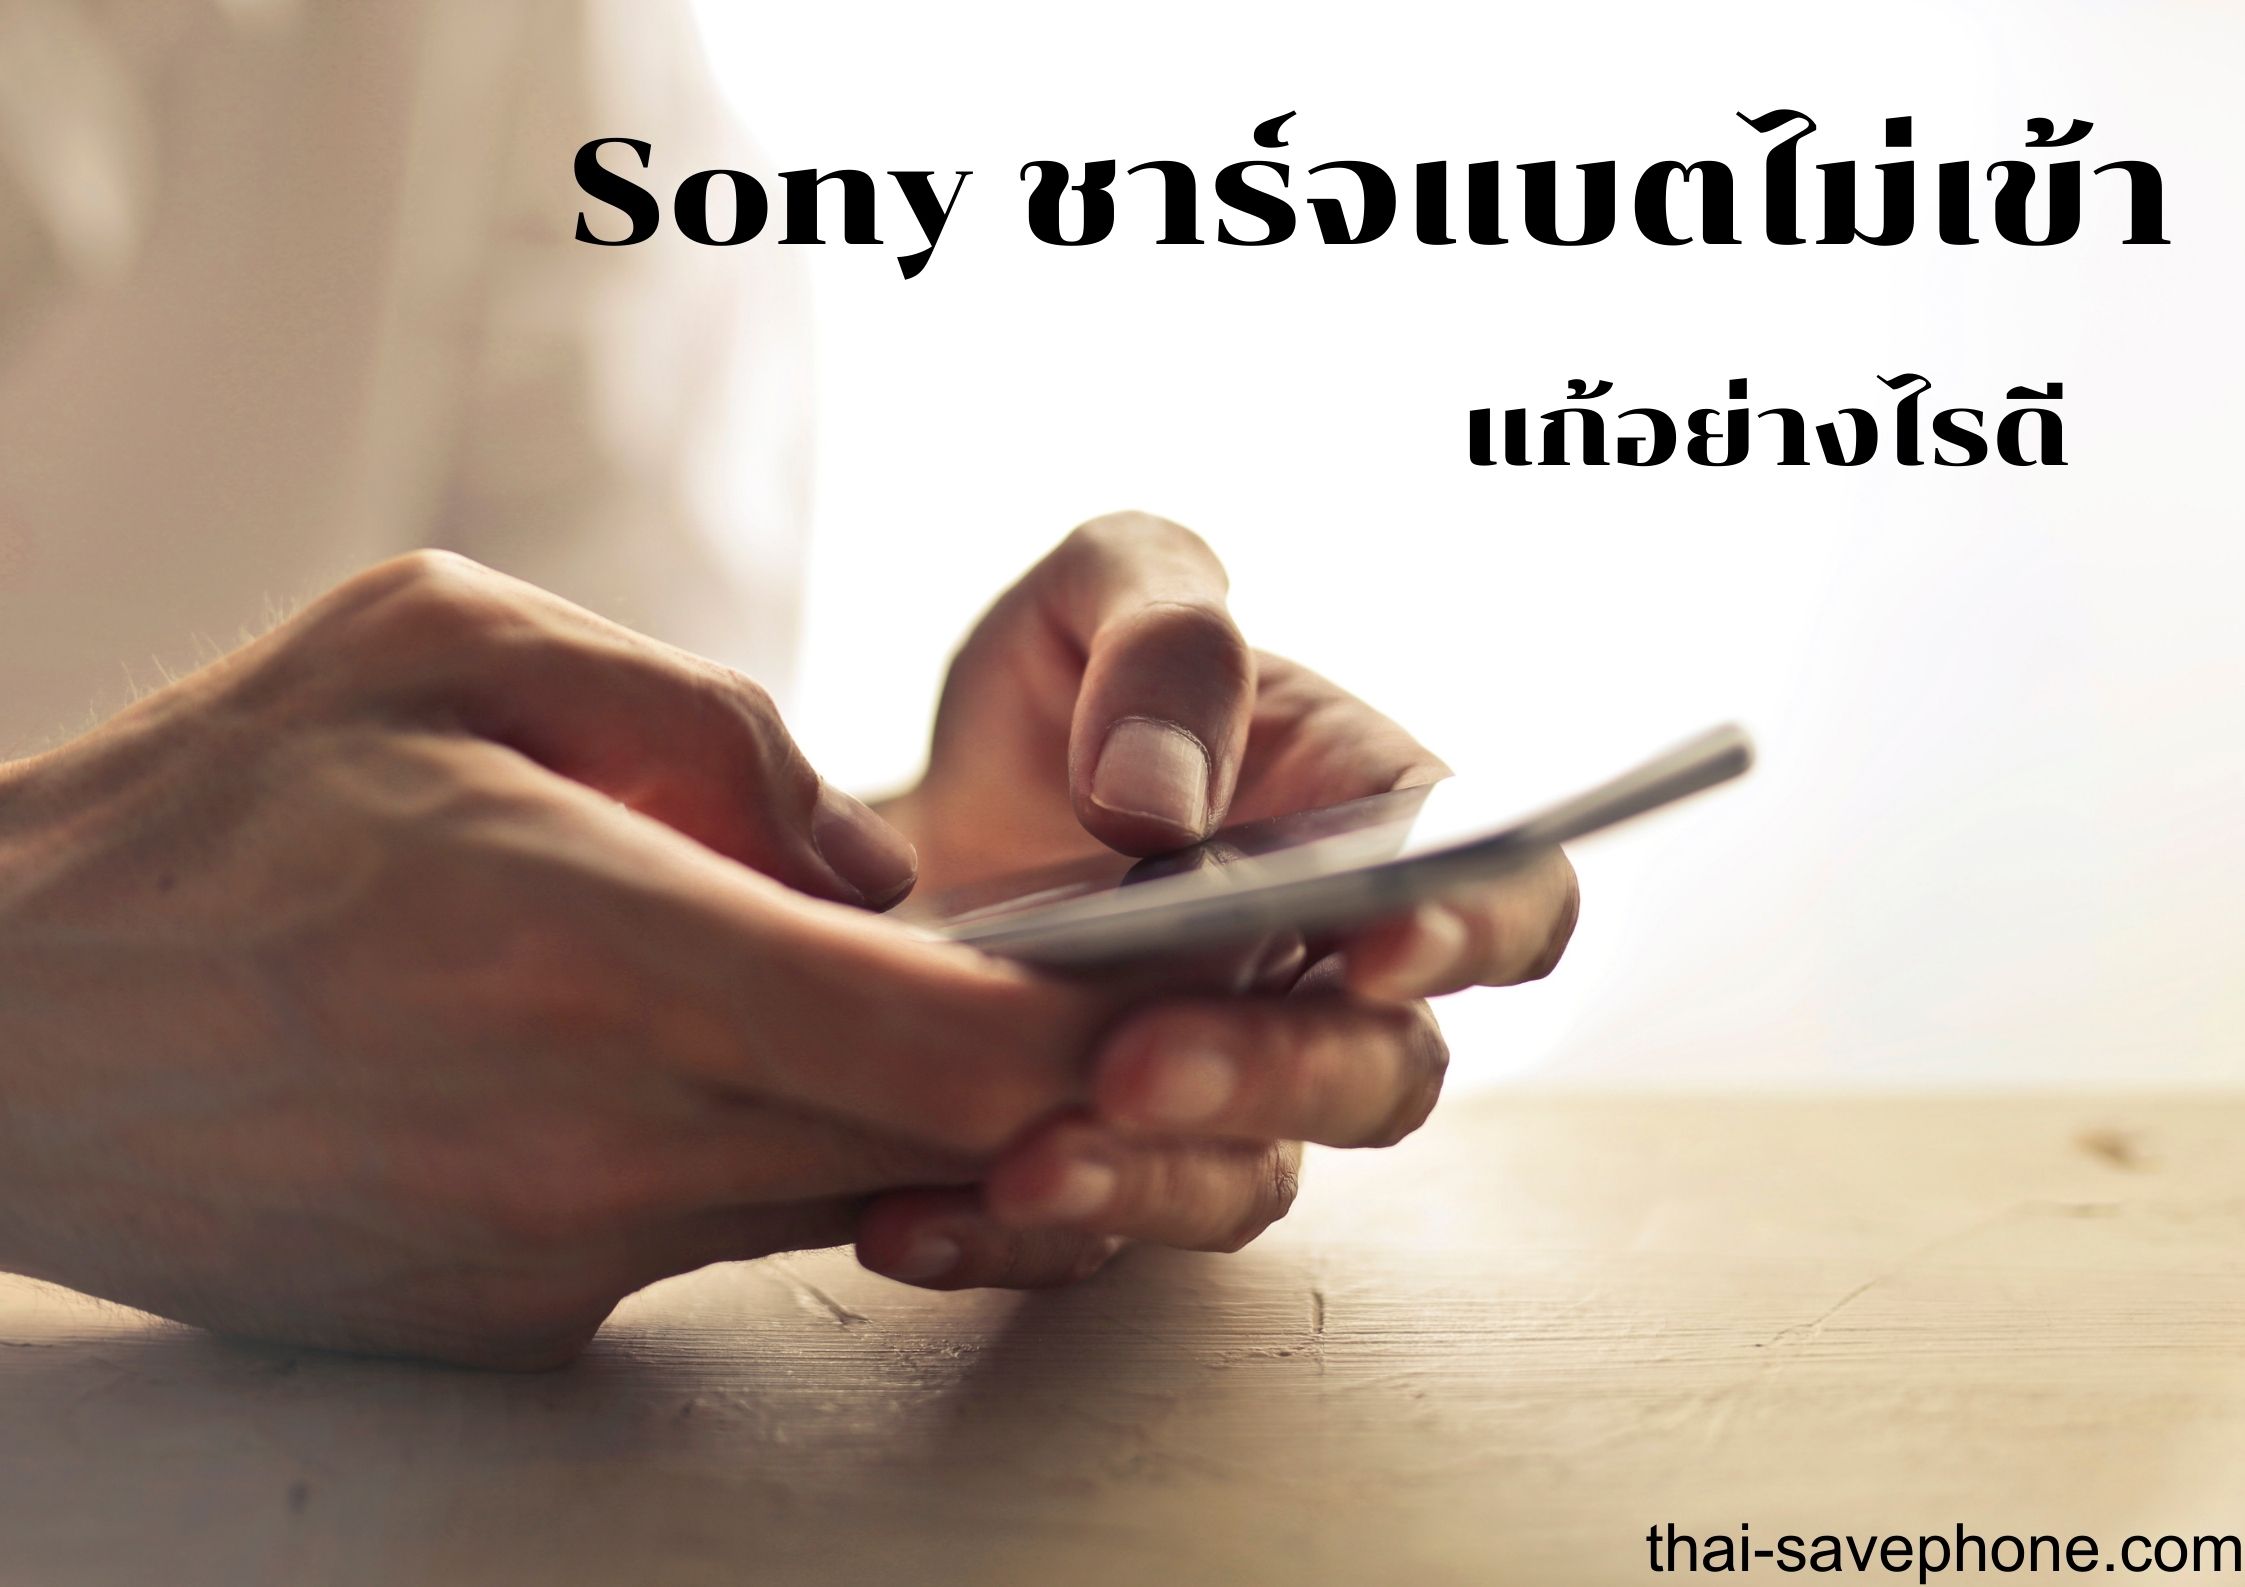 มือถือชาร์จแบตไม่เข้า Sony ทำอย่างไรดี - ร้านซ่อมโทรศัพท์มือถือ ออนไลน์